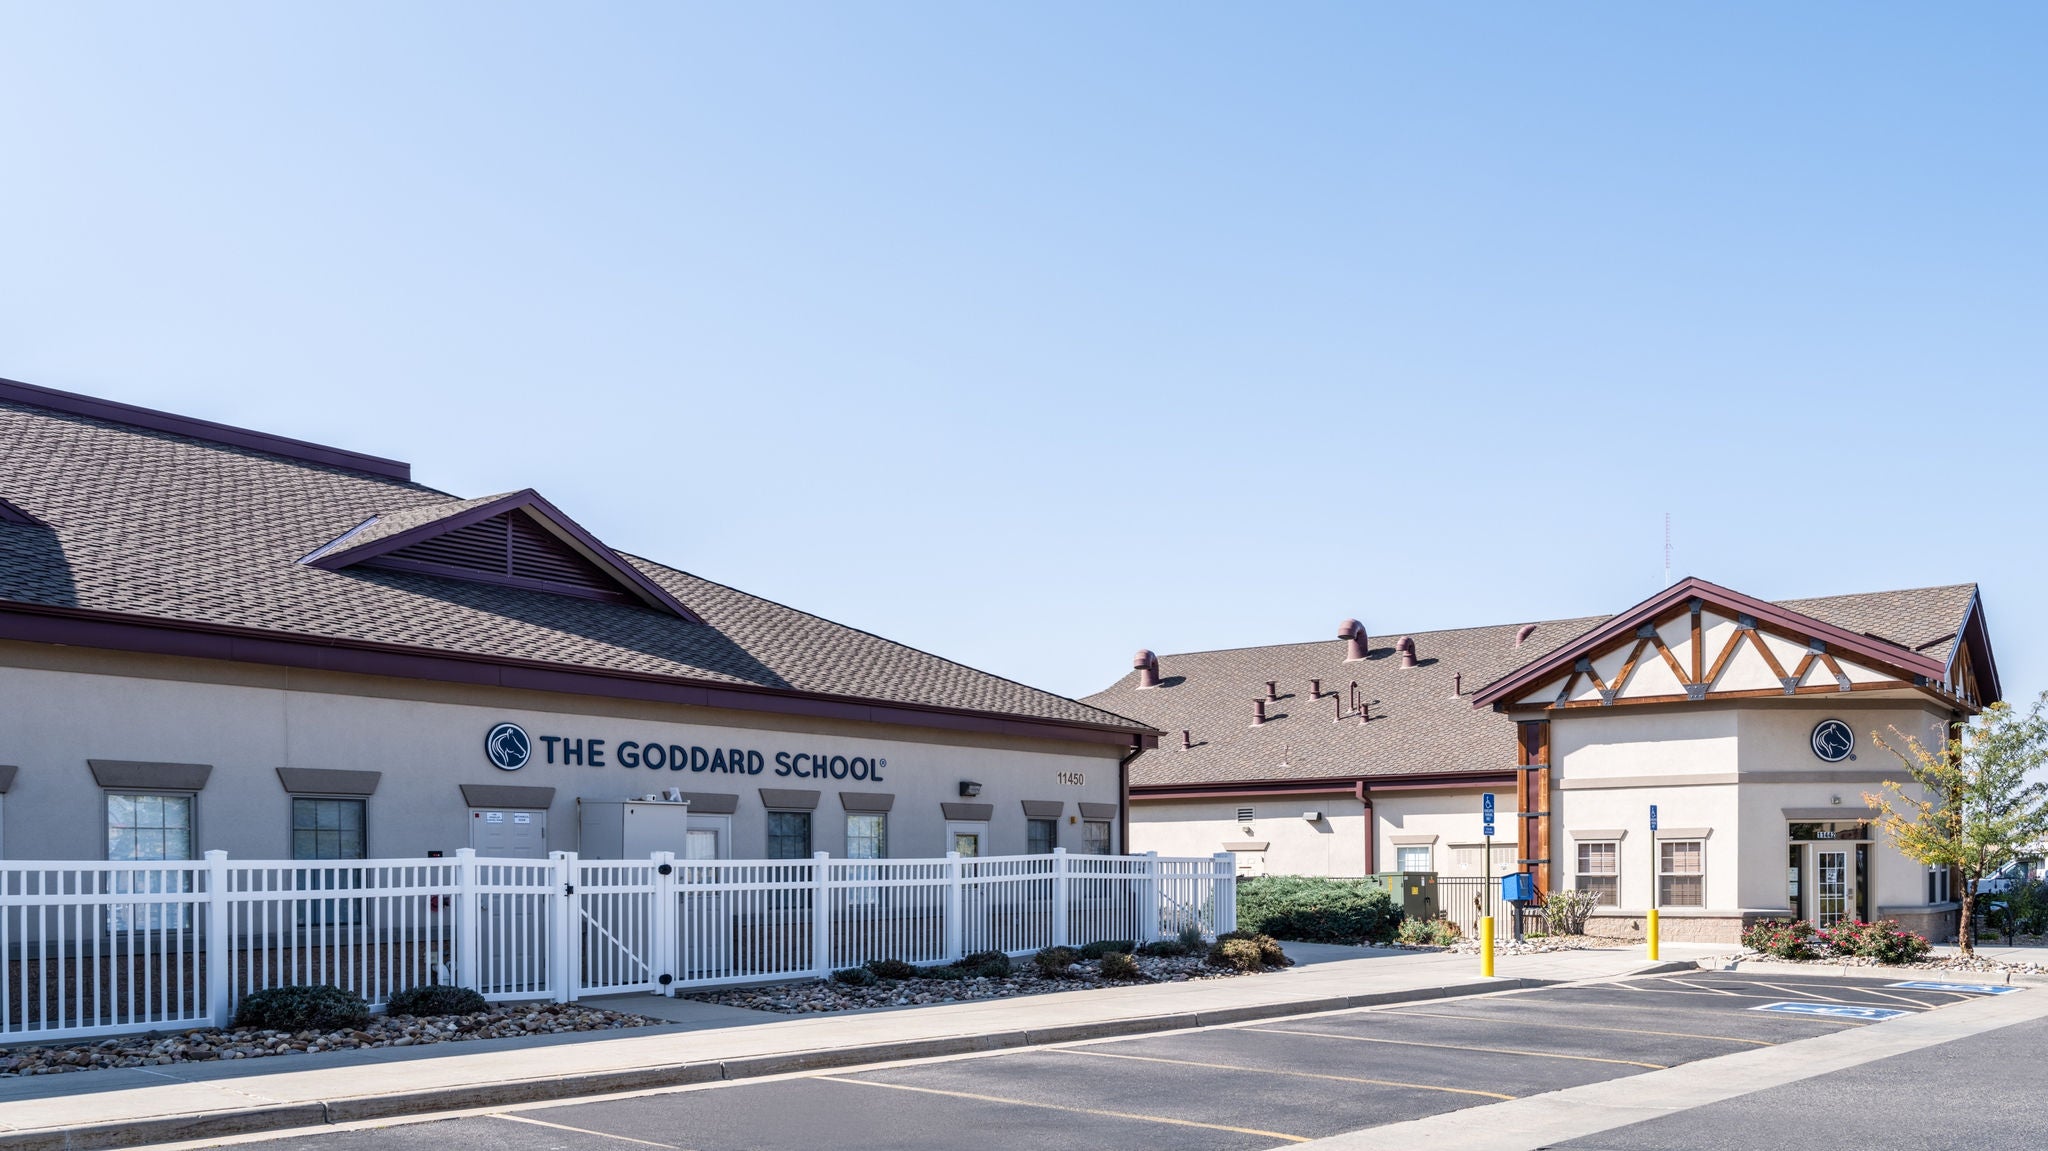 Exterior of the Goddard School in Castle Rock Colorado